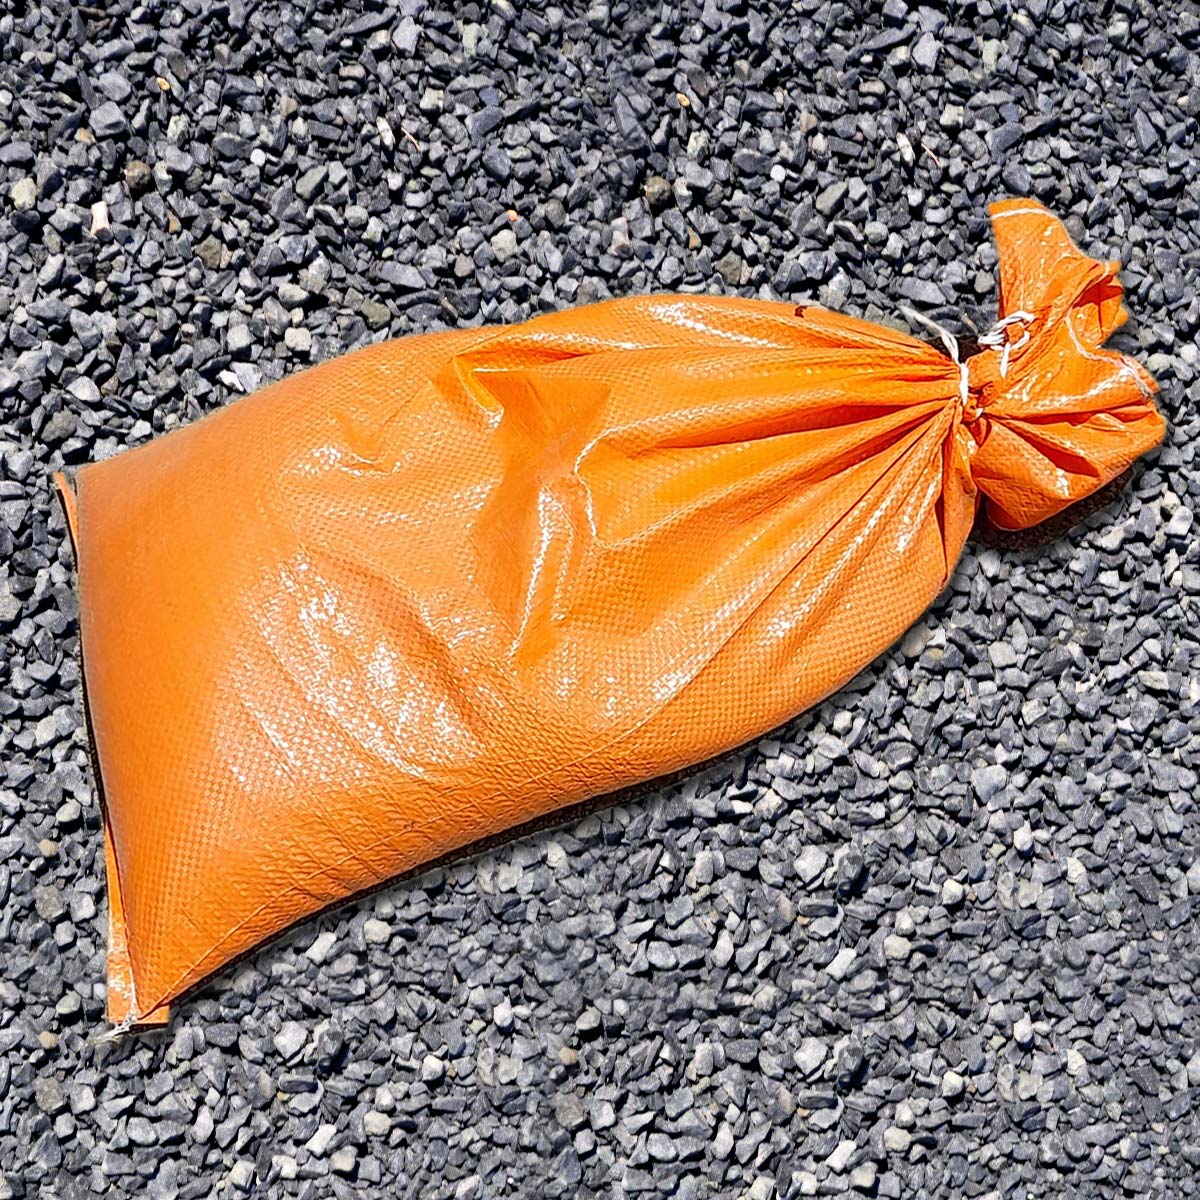 10/7 Mixed Aggregate with 20kg orange hi-vis sandbag